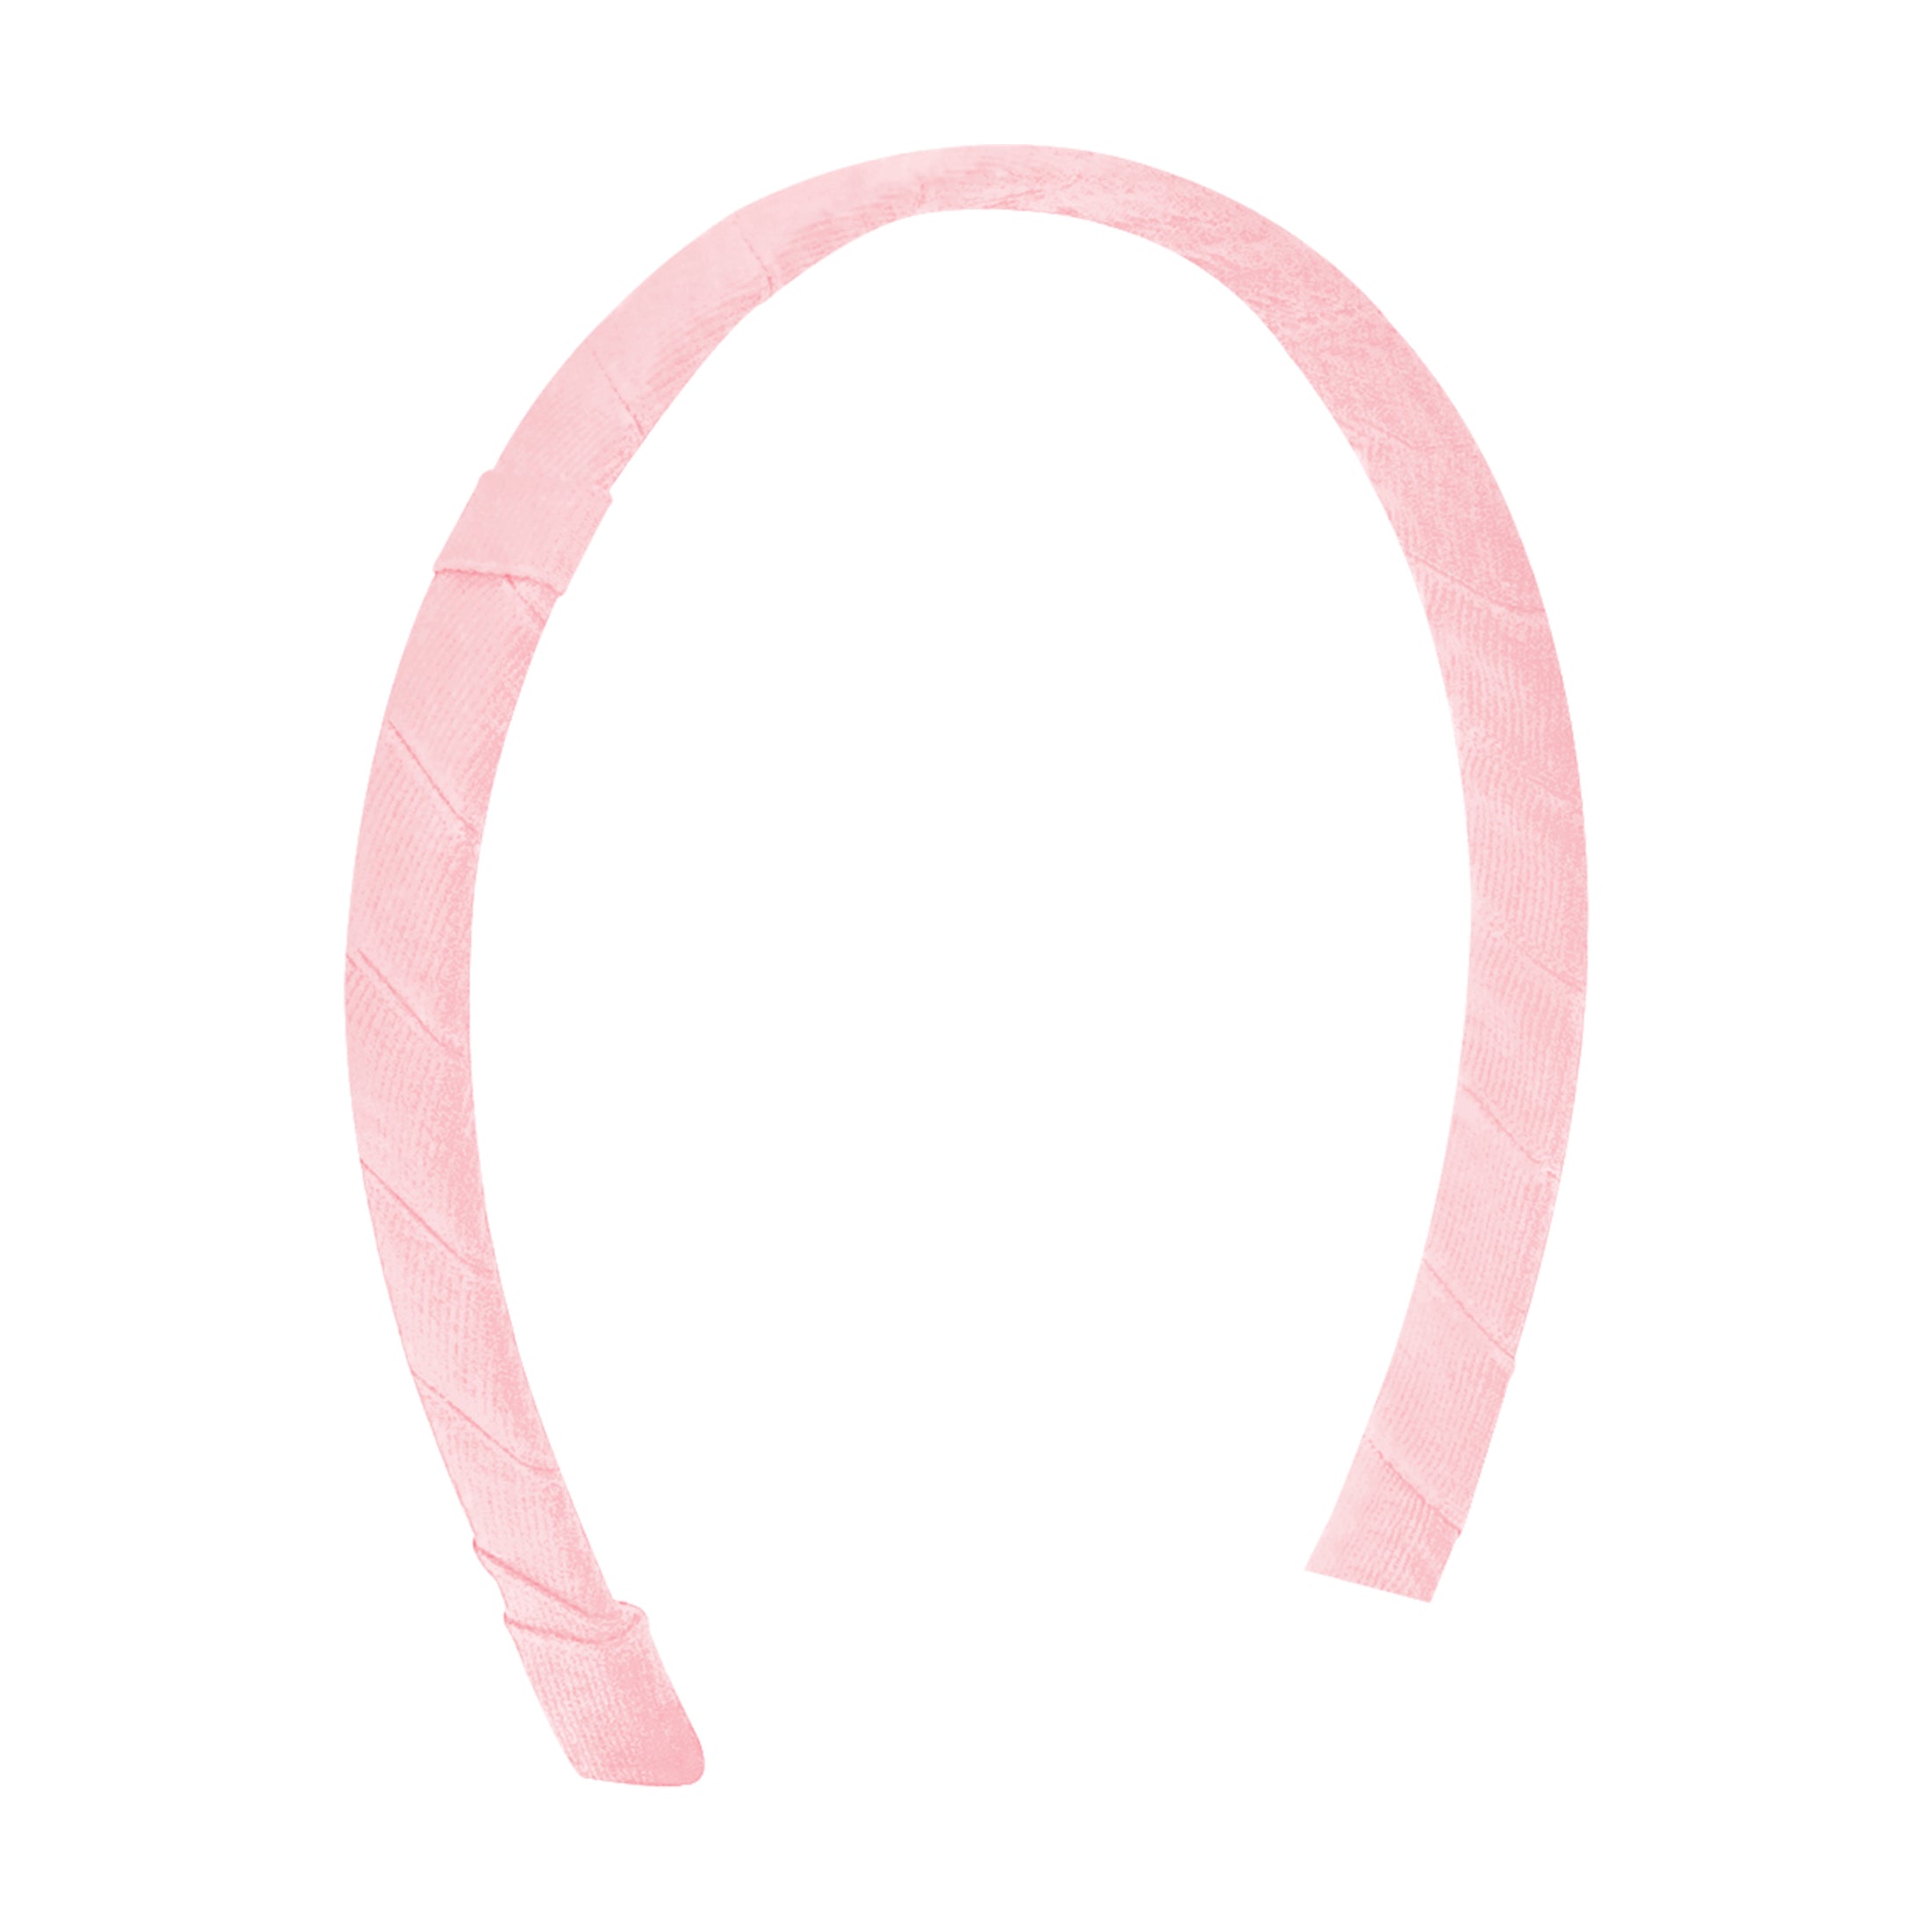 Add-A-Bow Grosgrain Headband - 1/2in.